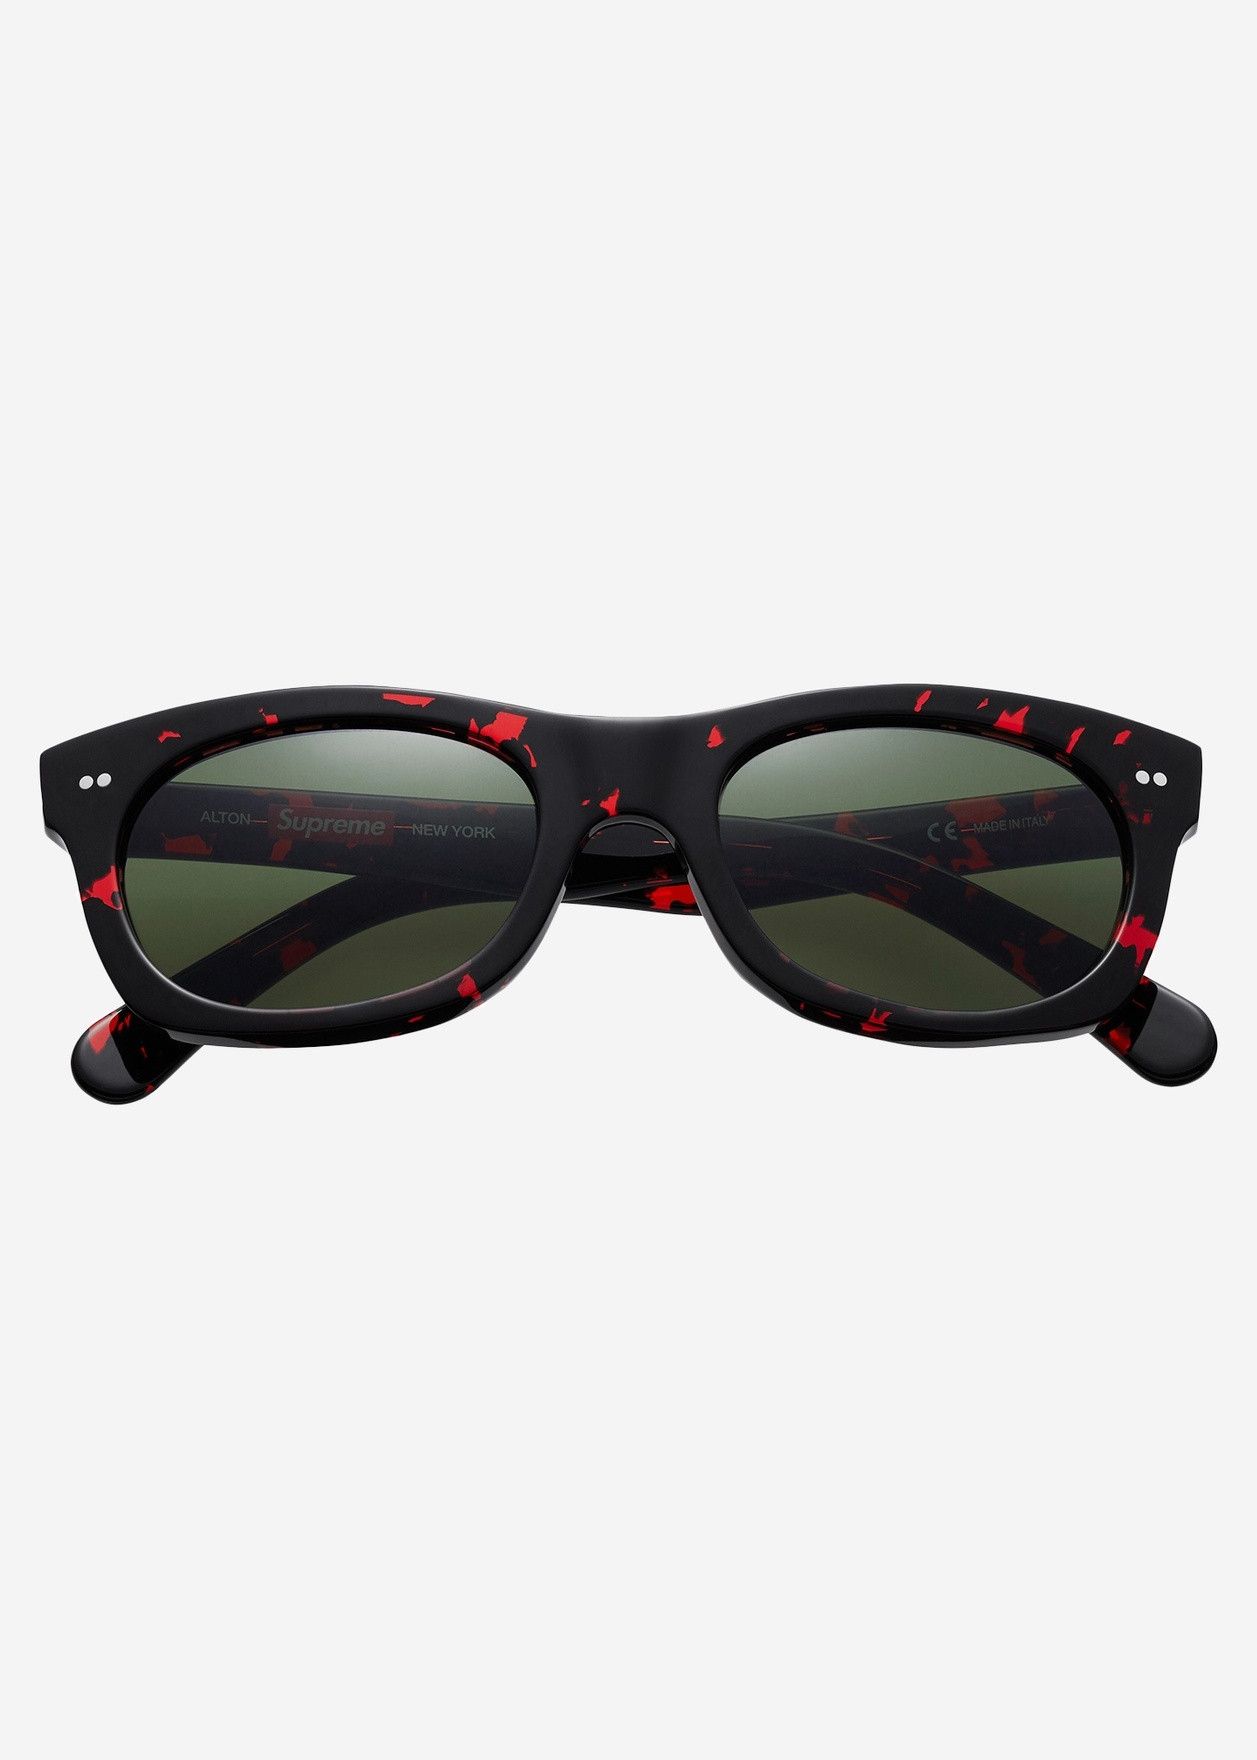 Supreme Supreme Alton Red Tortoise Sunglasses | Grailed